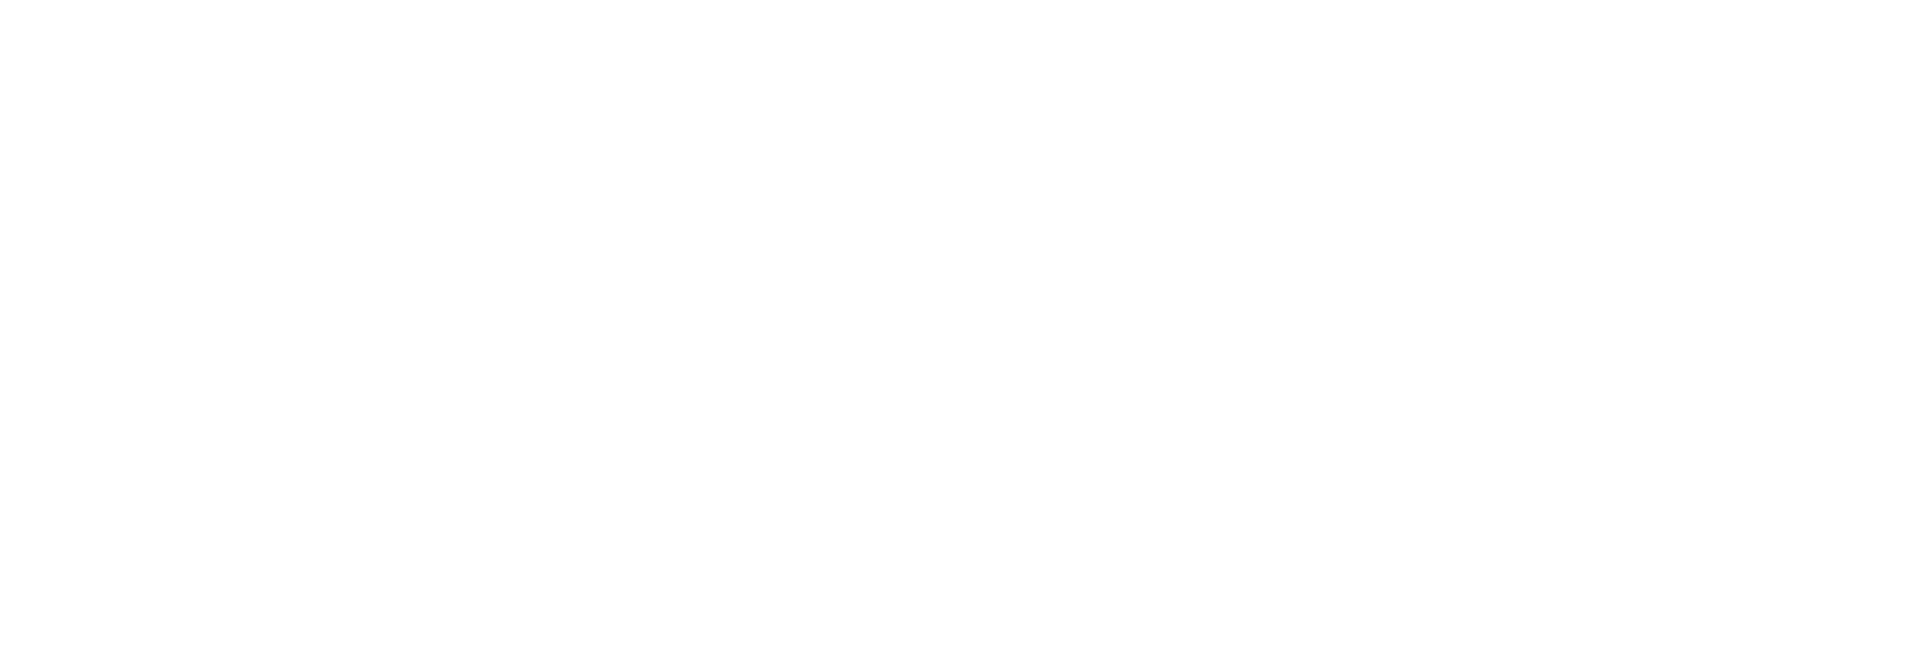 March 2024 cohort dates